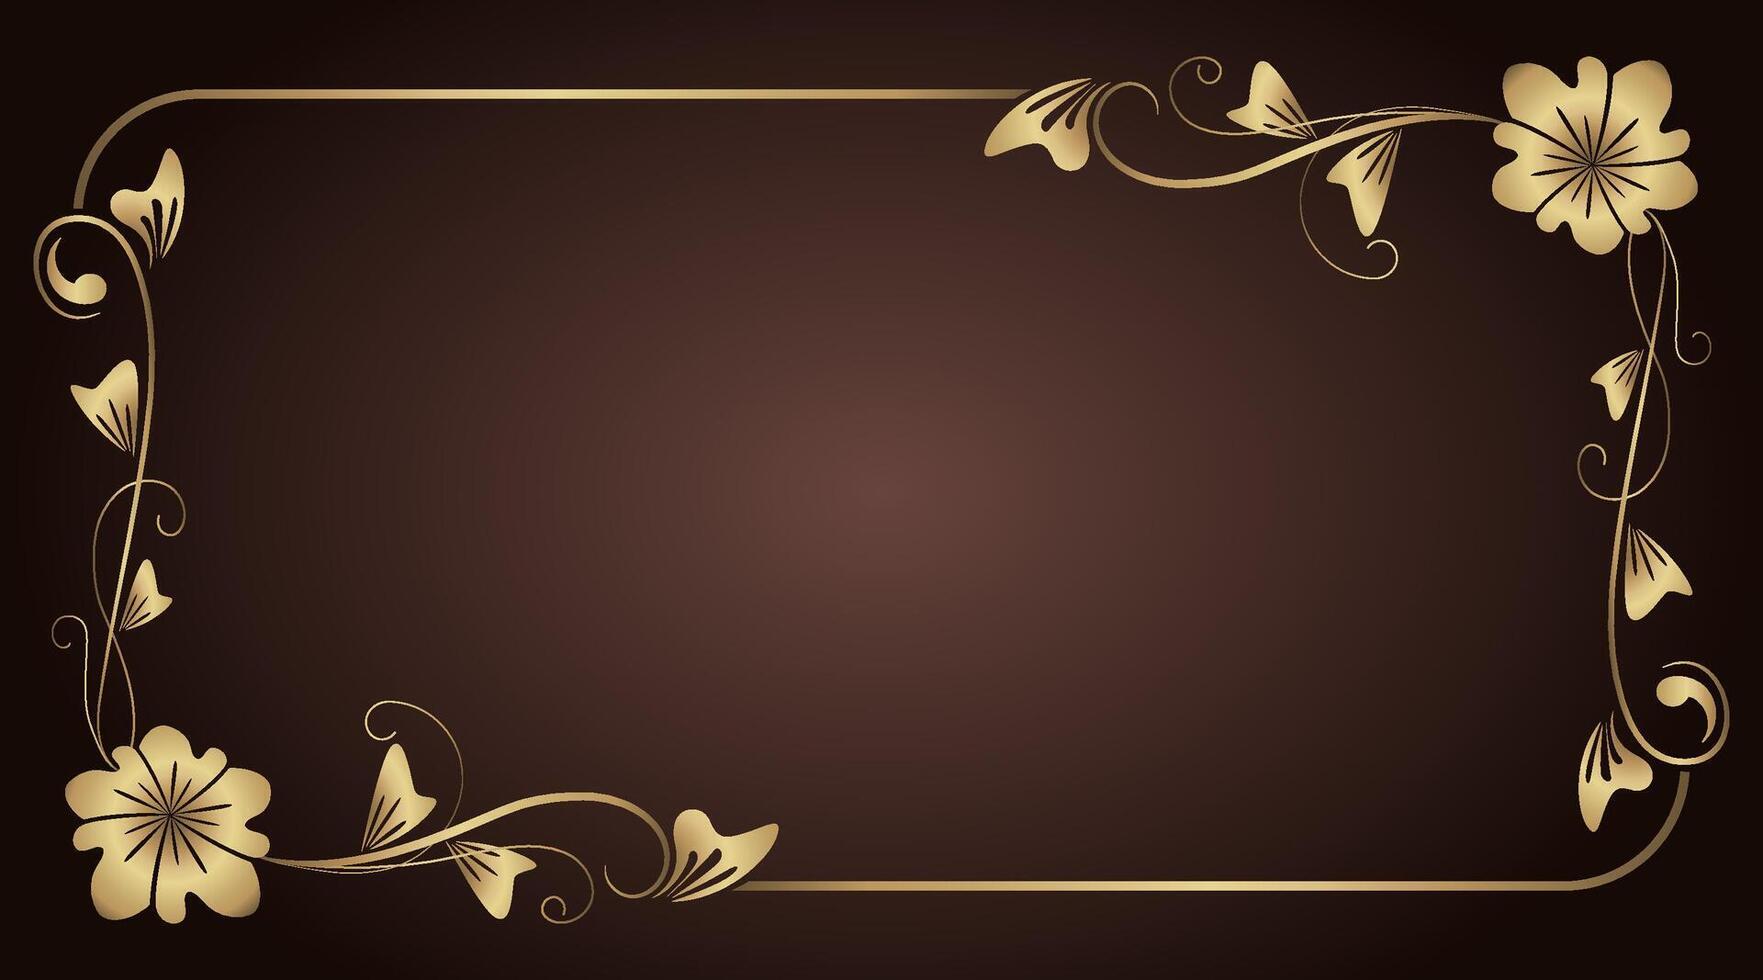 gold ornamental floral frame, vintage background vector